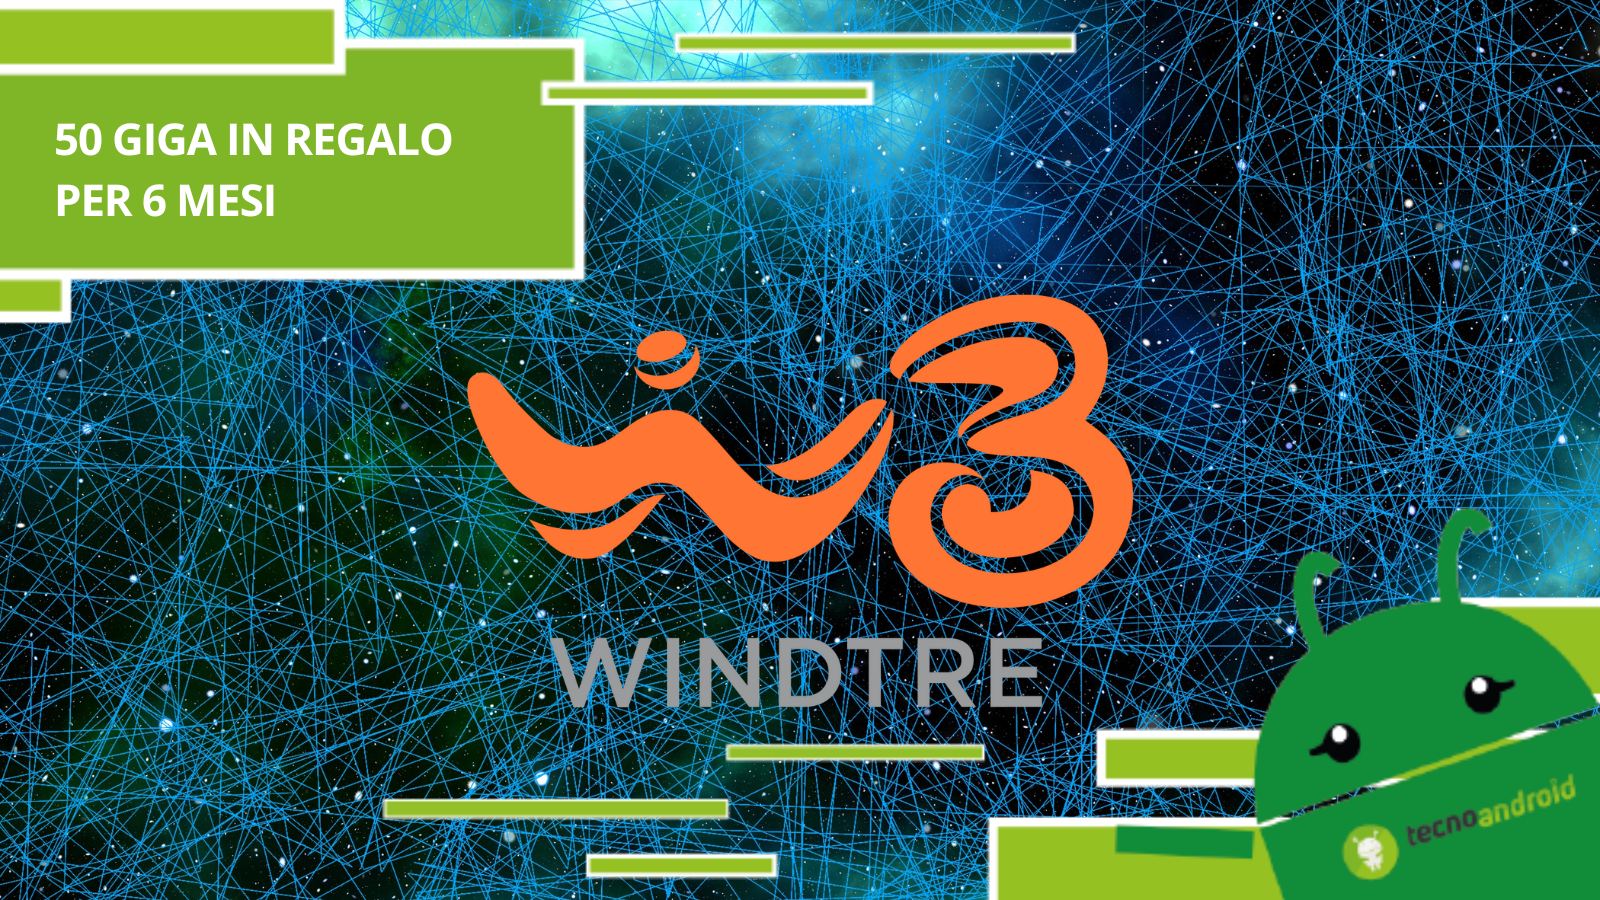 WindTre, l'operatore ha deciso di premiare diversi utenti con 50 Giga per 6 mesi